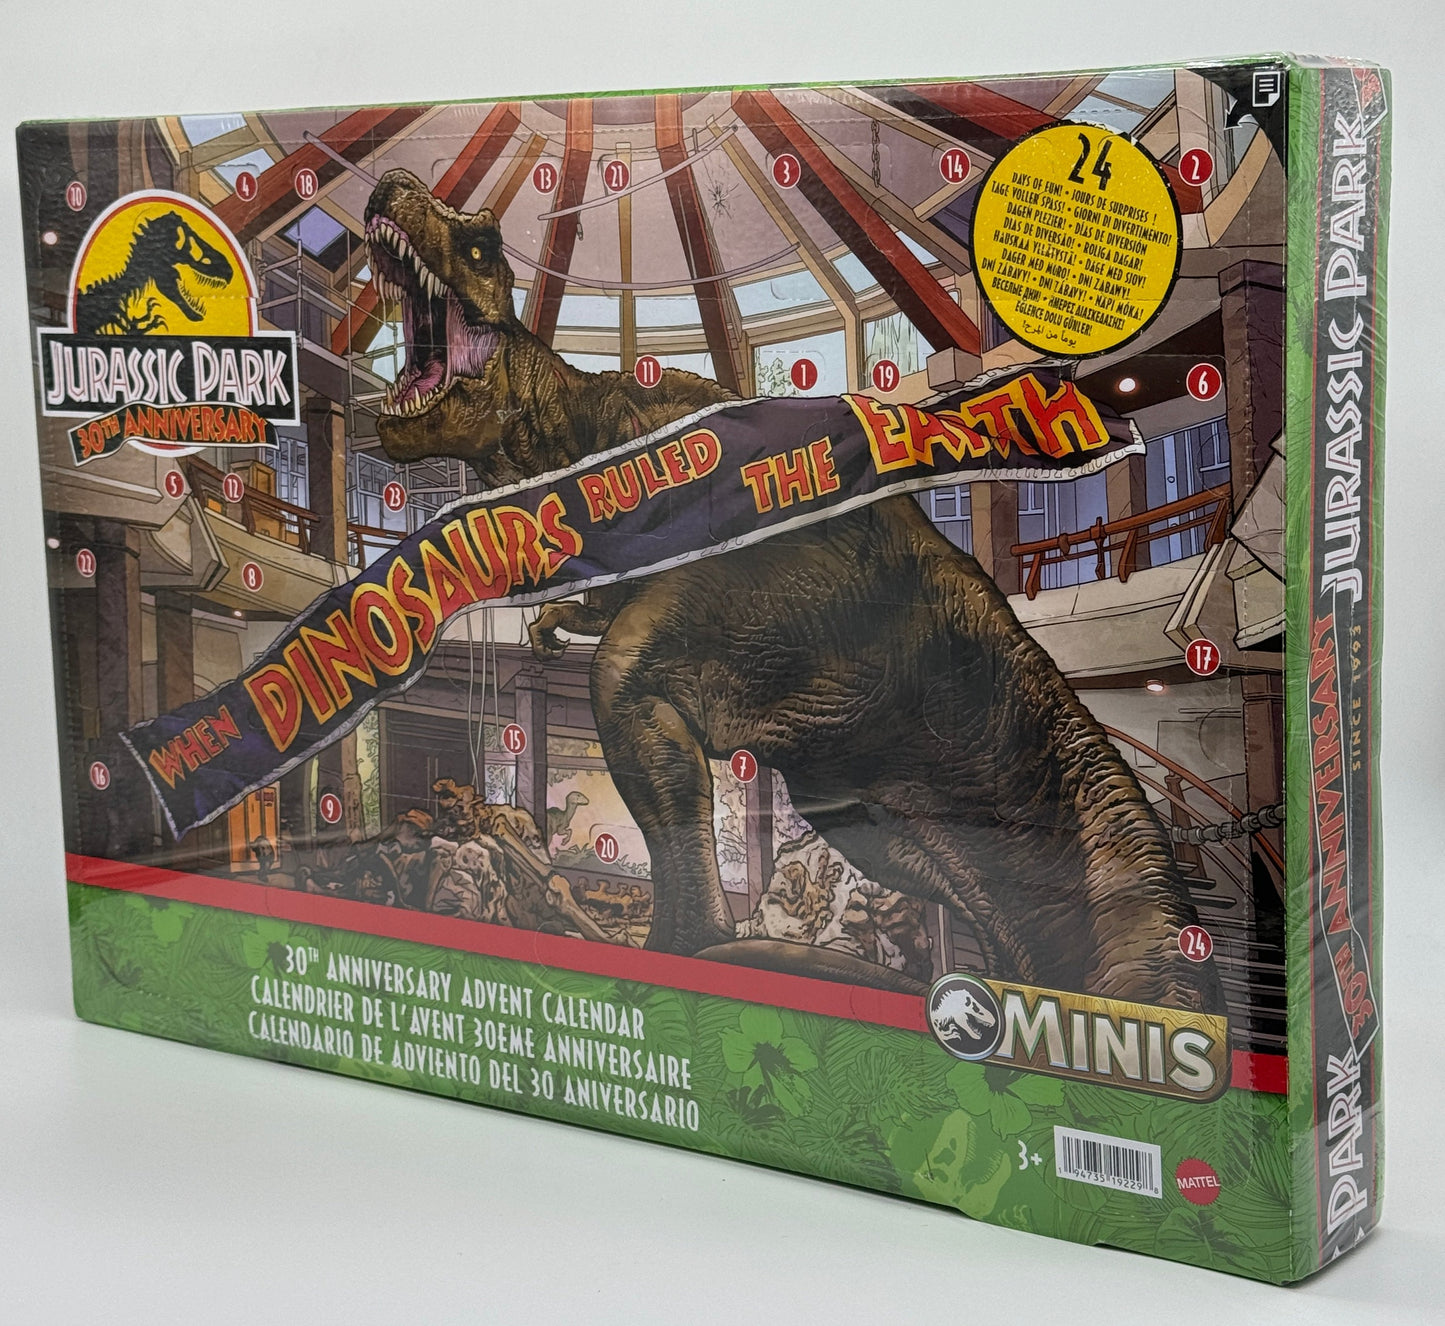 Jurassic Park Minis "Adventskalender" 30th Anniversary mit 30 Überraschungen 24 Türen